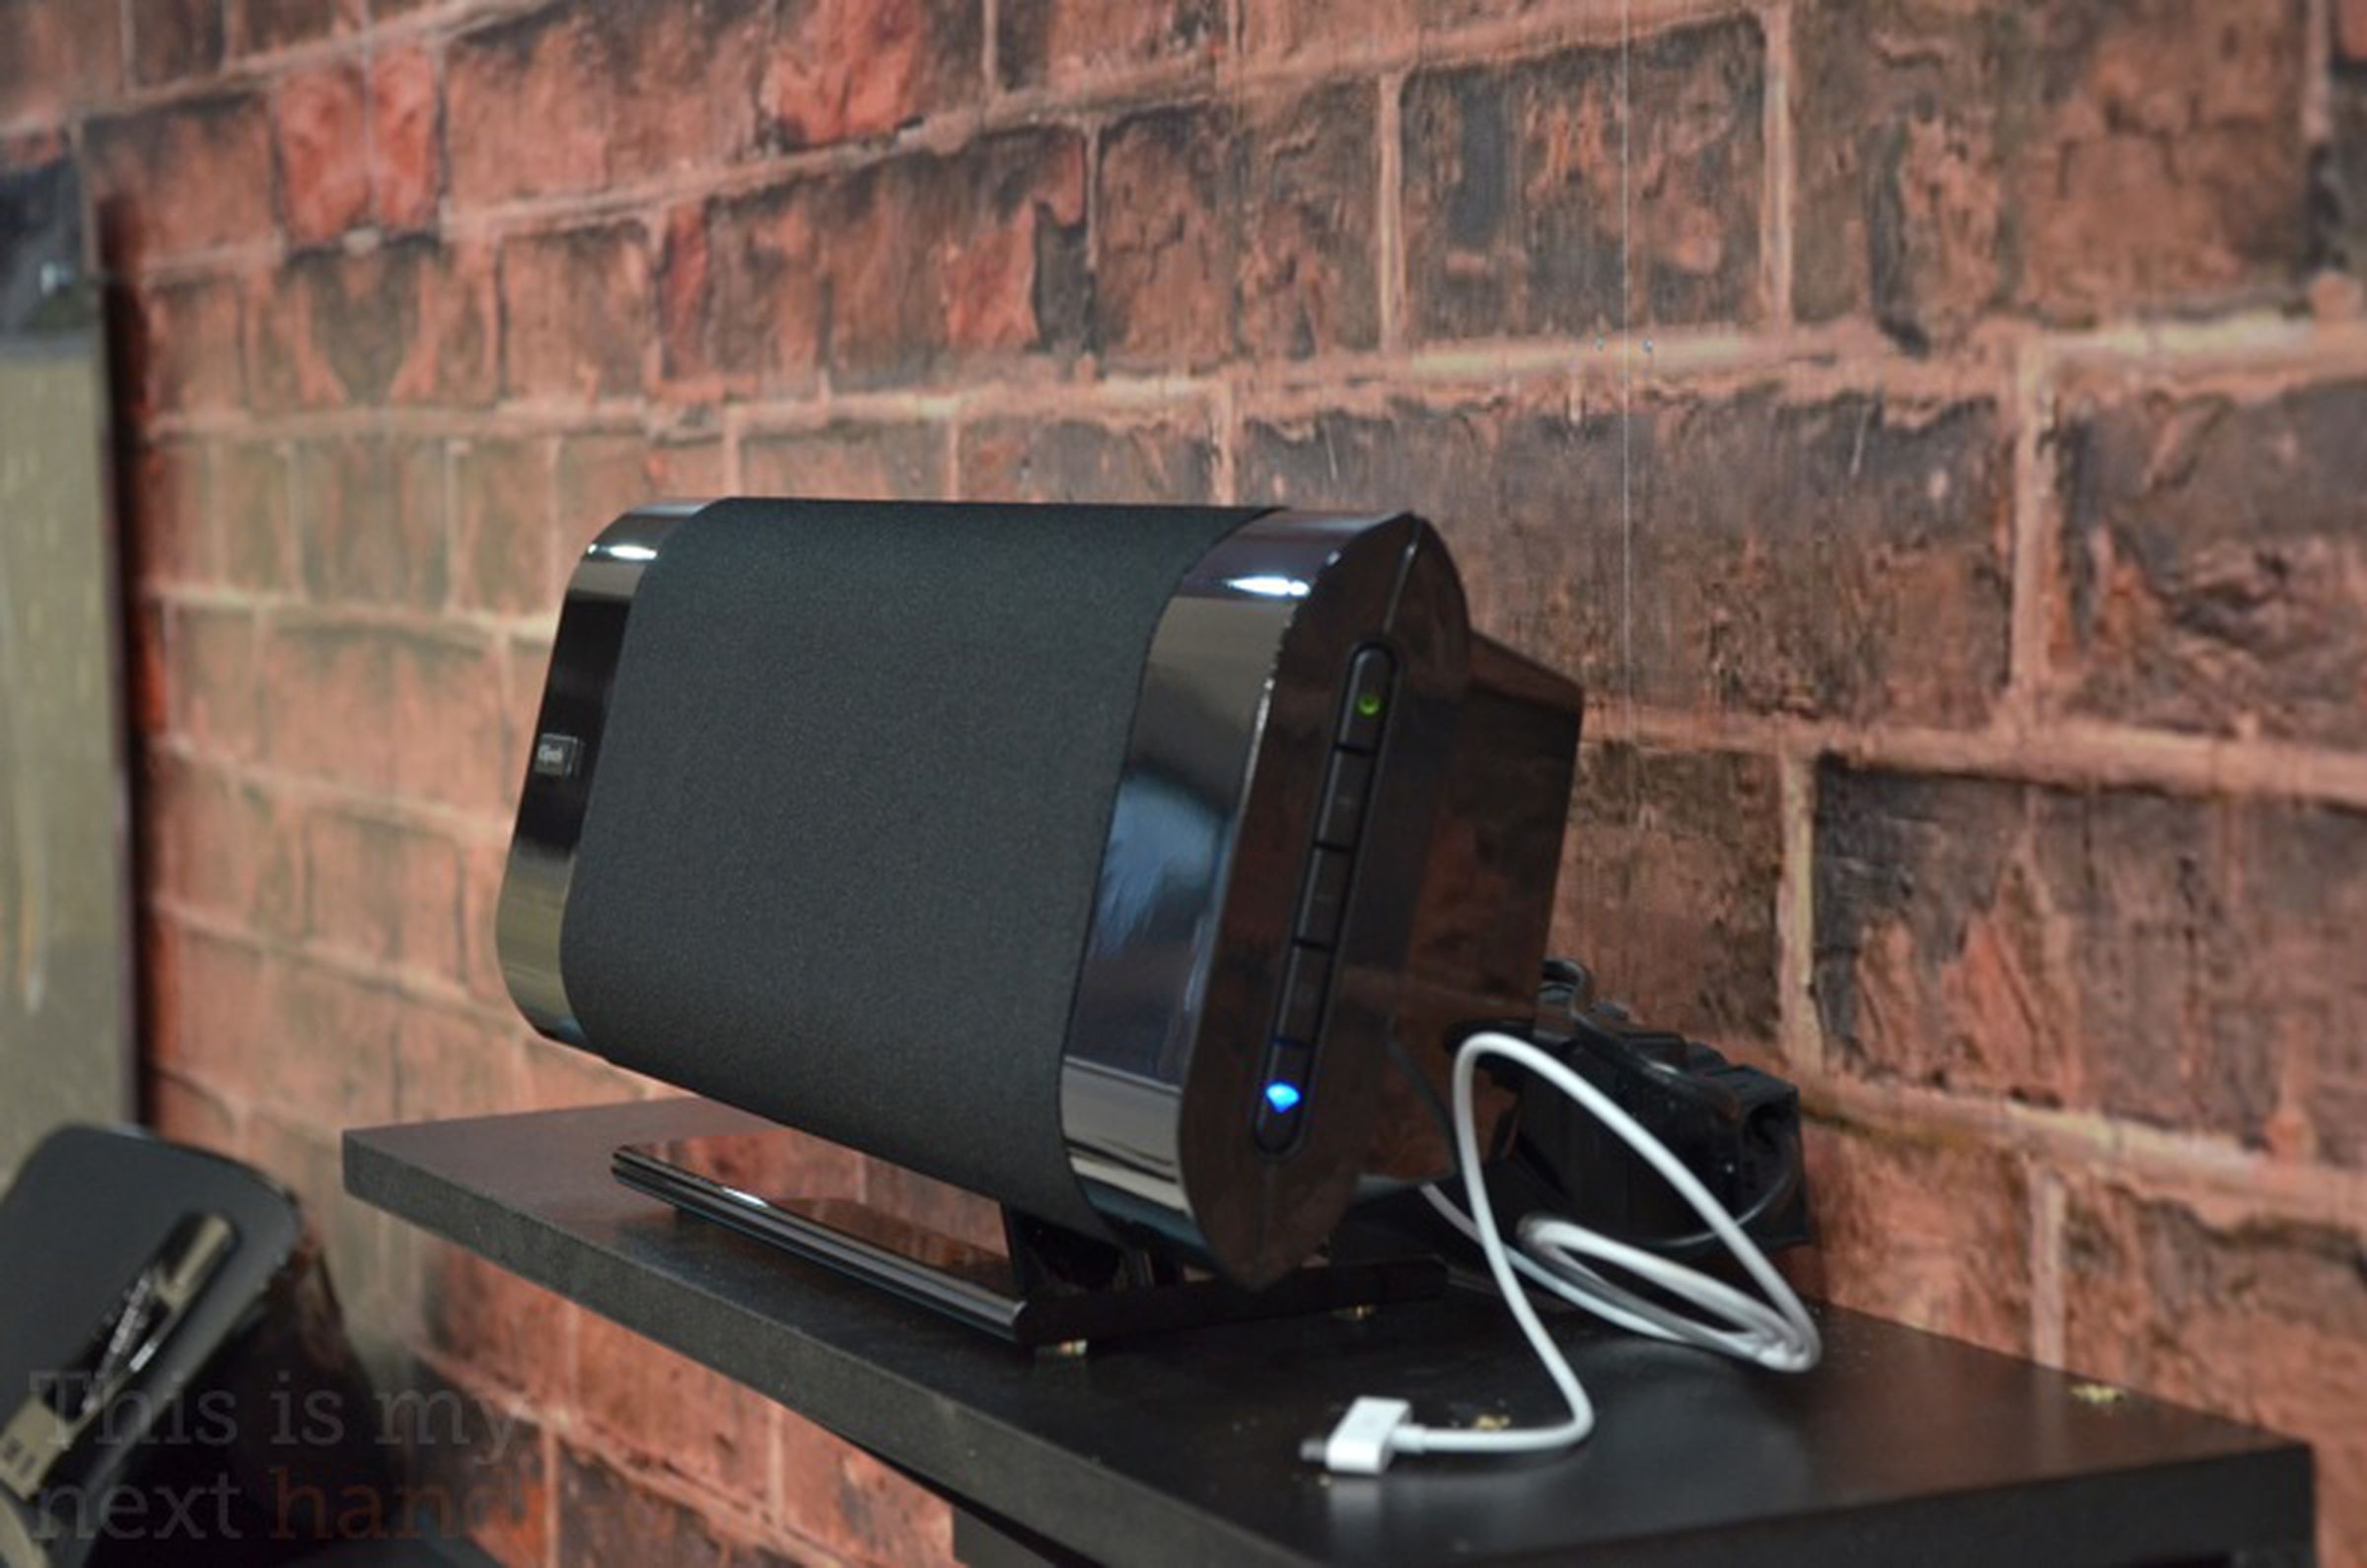 Klipsch Gallery G-17 AirPlay speaker hands-on photos